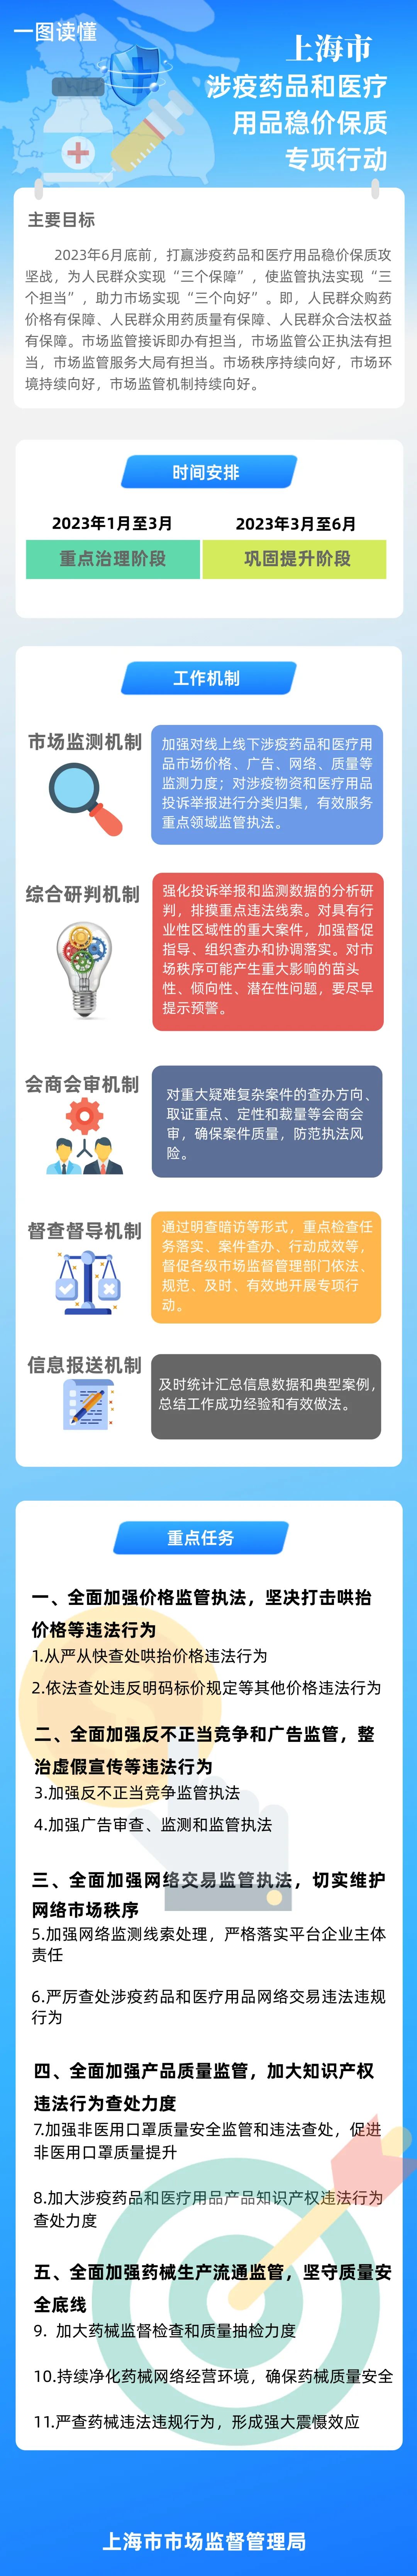 上海开展涉疫药品和医疗用品稳价保质专项行动.jpeg